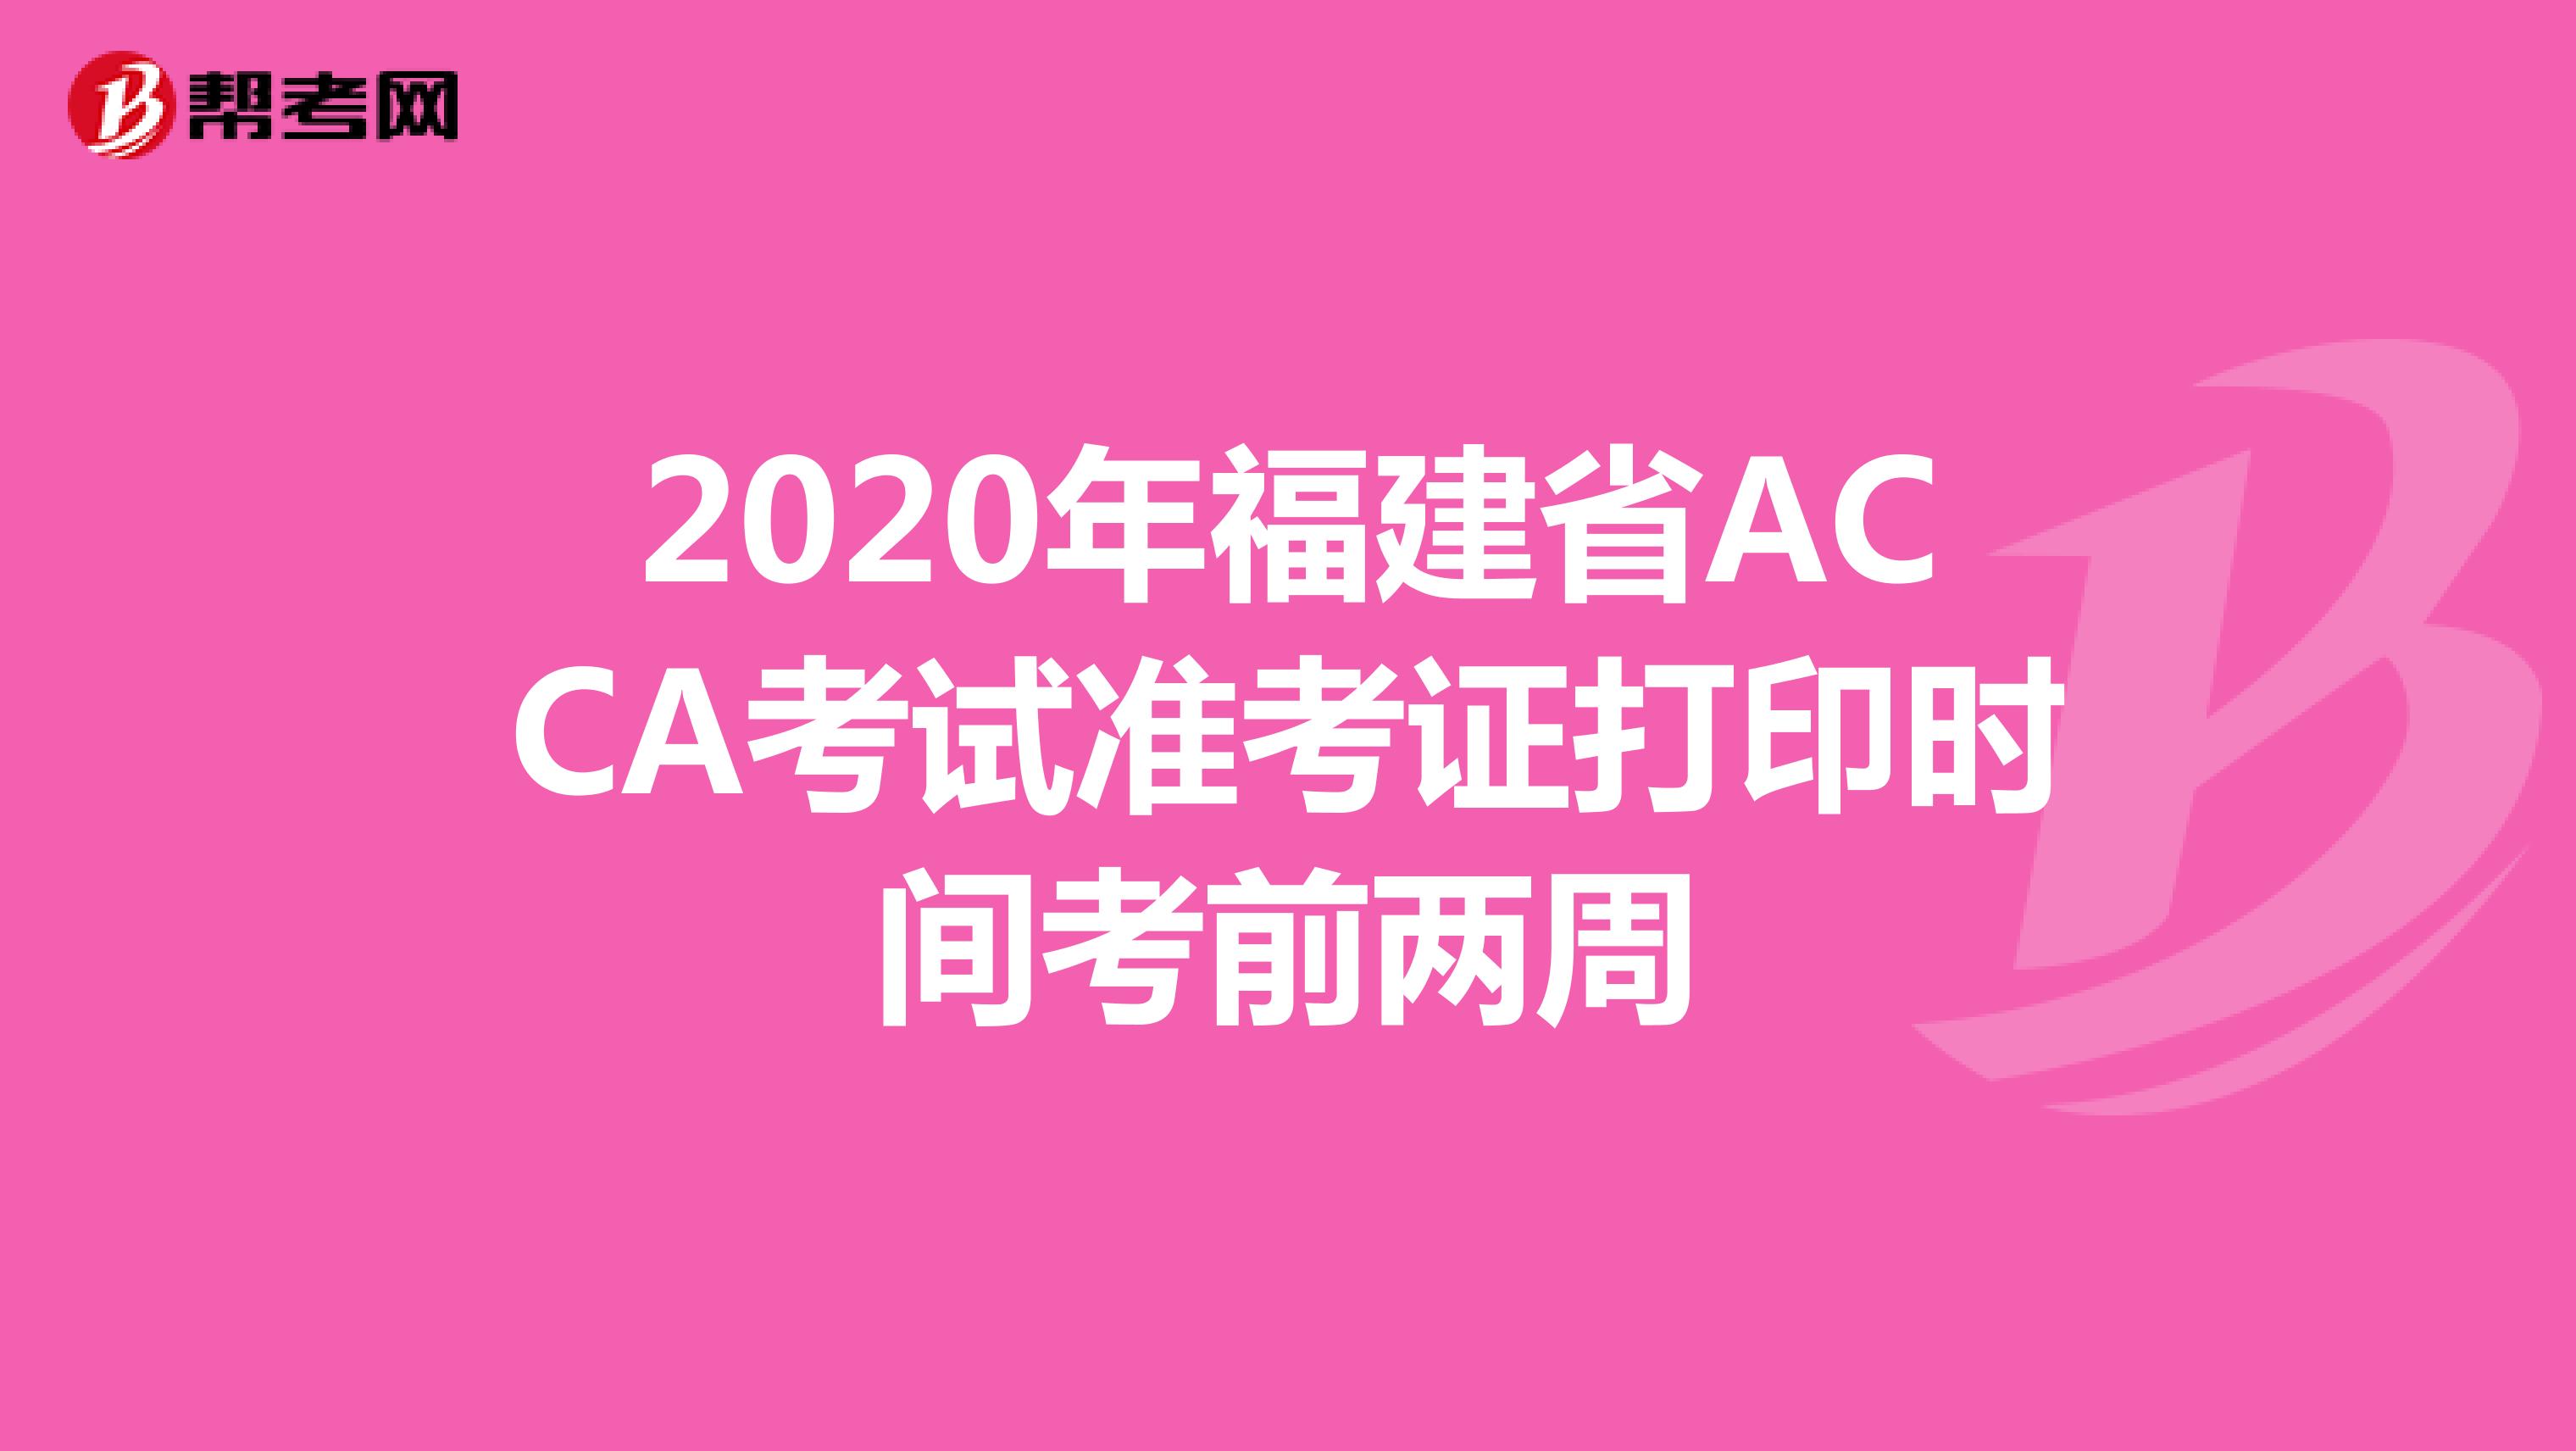 2020年福建省ACCA考试准考证打印时间考前两周